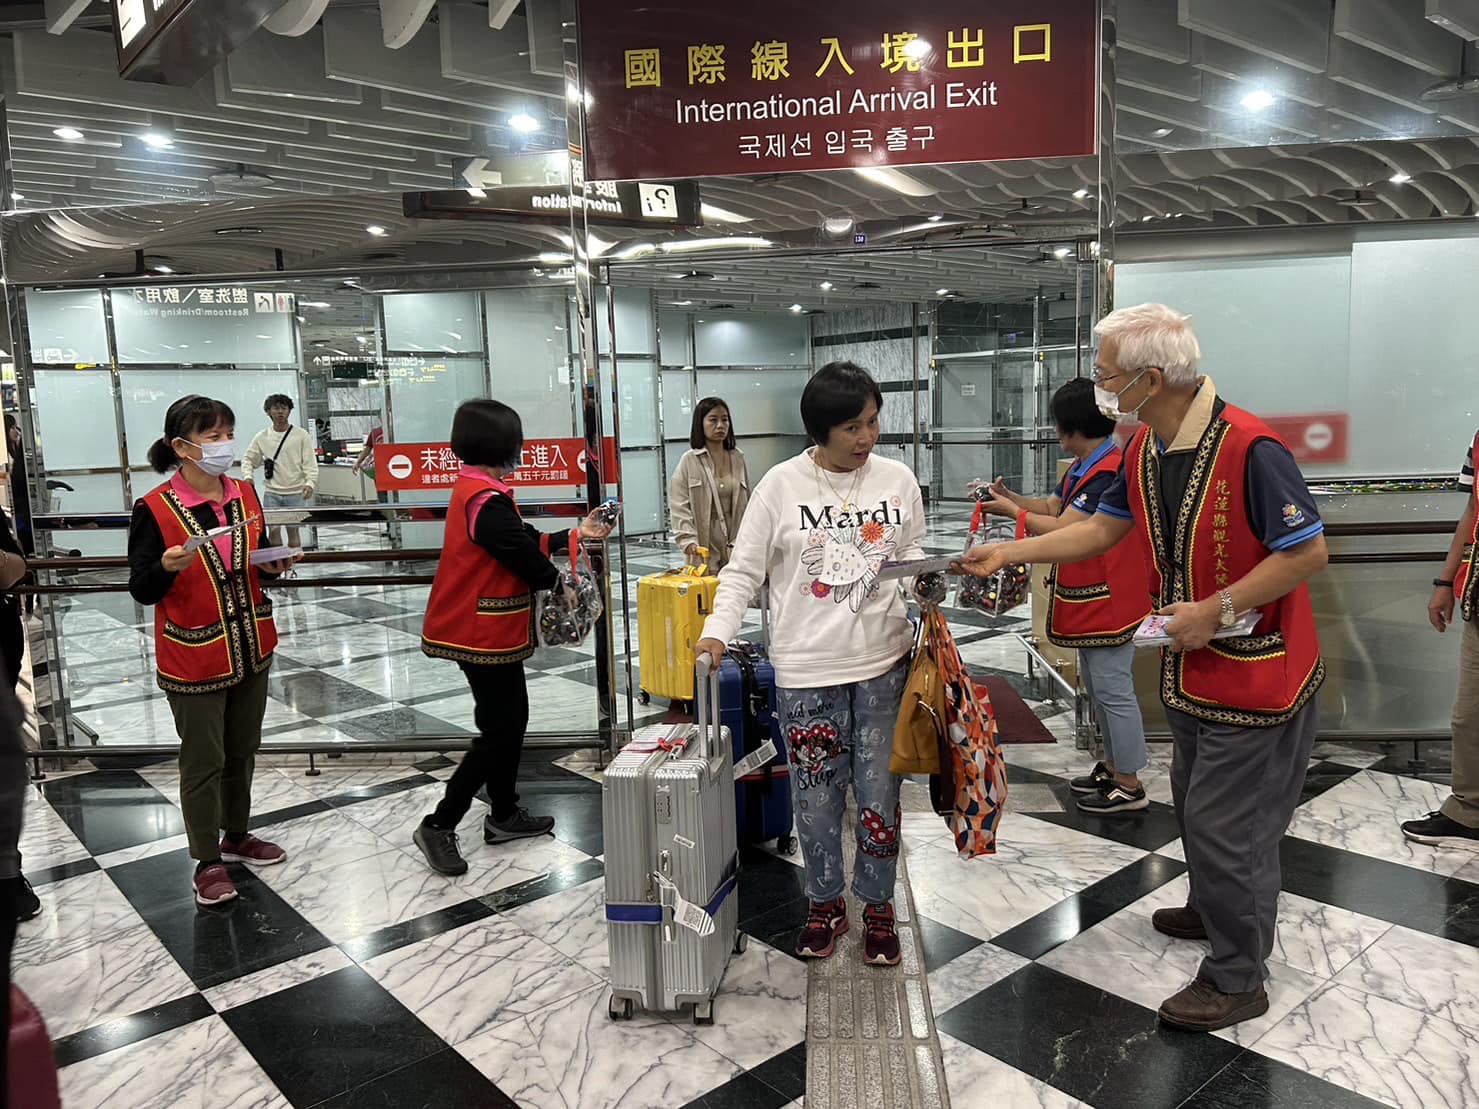 ทูตการท่องเที่ยวอาสาสมัครได้จัดกิจกรรมต้อนรับนักท่องเที่ยวชาวไทยที่เดินทางมาถึงสนามบินอย่างอบอุ่น   ภาพ／จากเทศบาลเมืองฮัวเหลียน